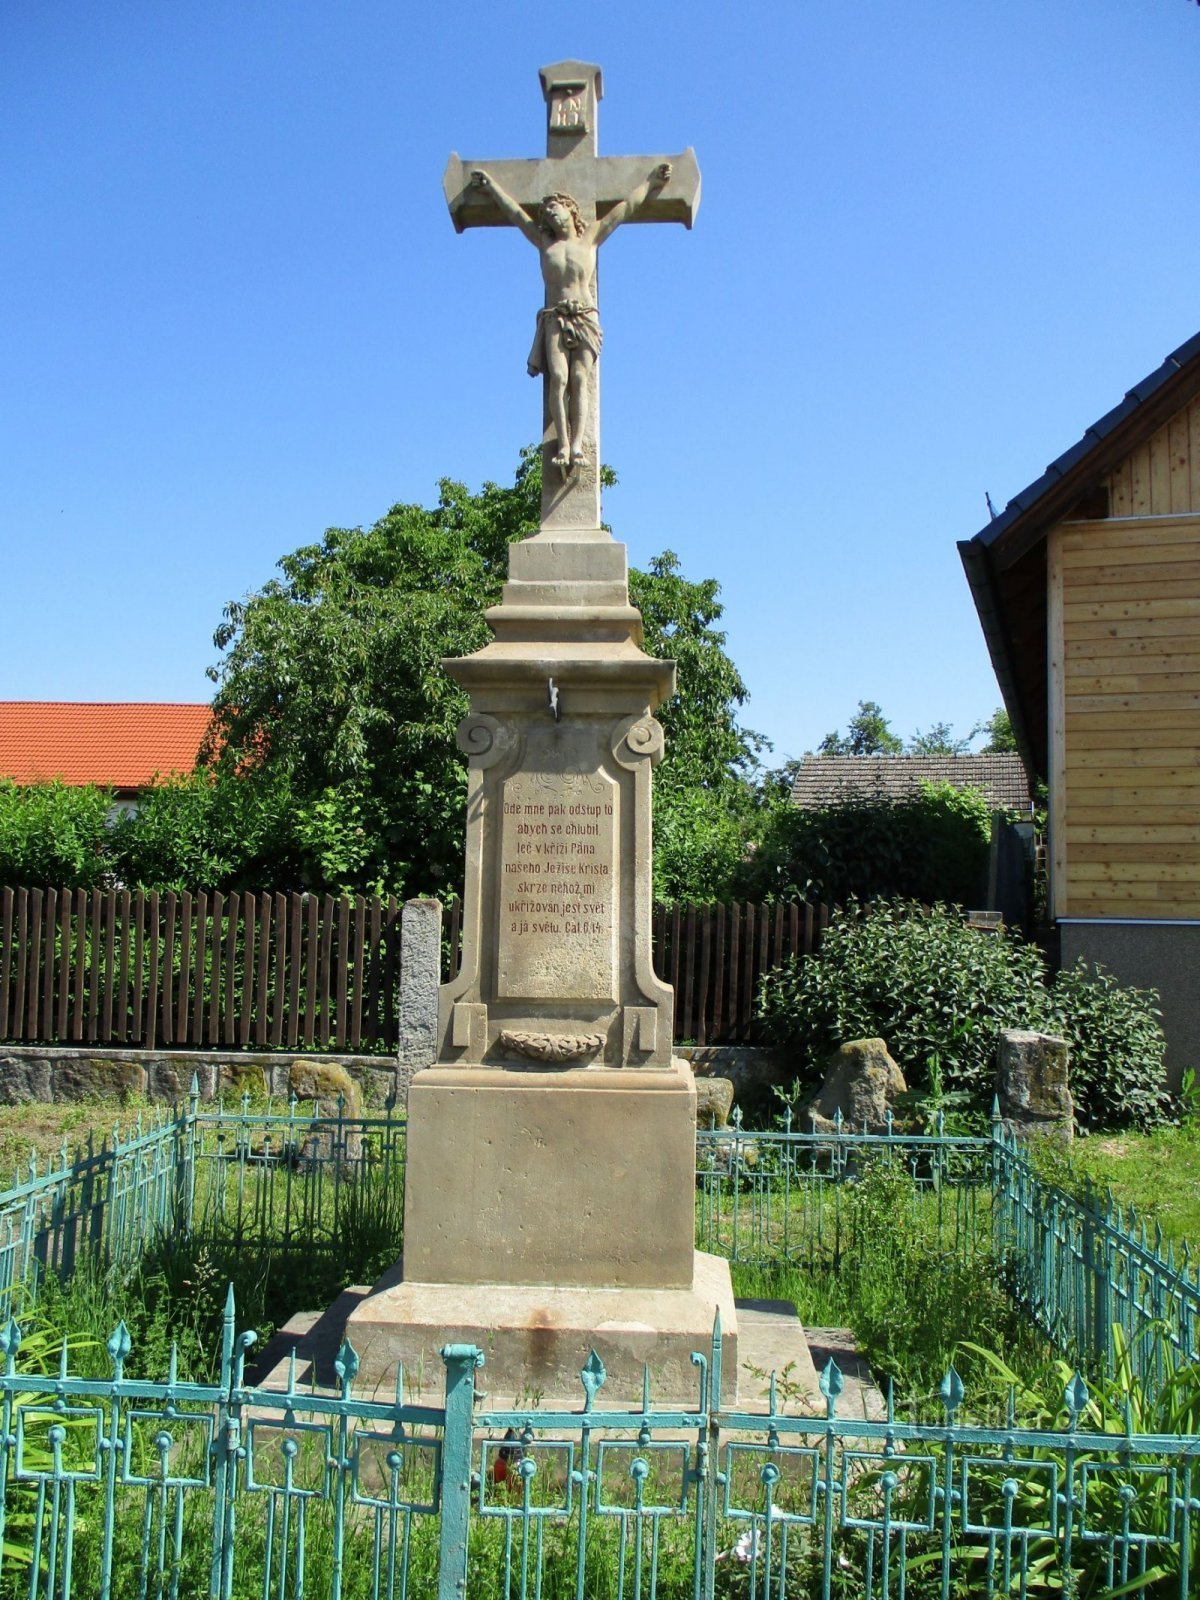 Krzyż z grupą krzyży pojednania w tle (Třebovětice, 4.6.2019 czerwca XNUMX)